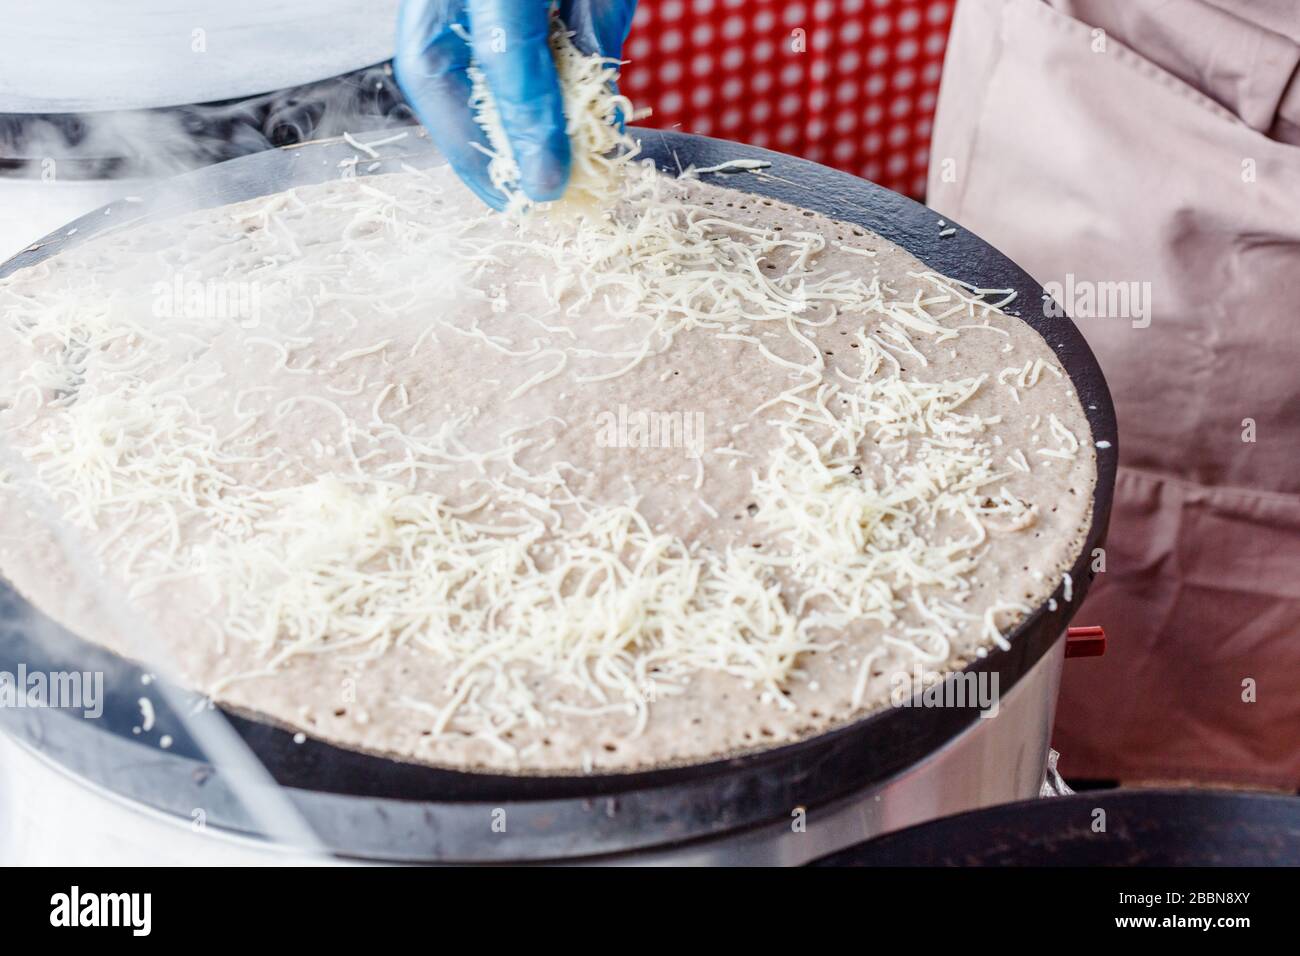 Fare crepes frittelle in un mercato alimentare. Una mano sta facendo crepes saporite all'aperto aggiungendo il formaggio grattugiato alla crepe su un grlicdle di metallo. Foto Stock